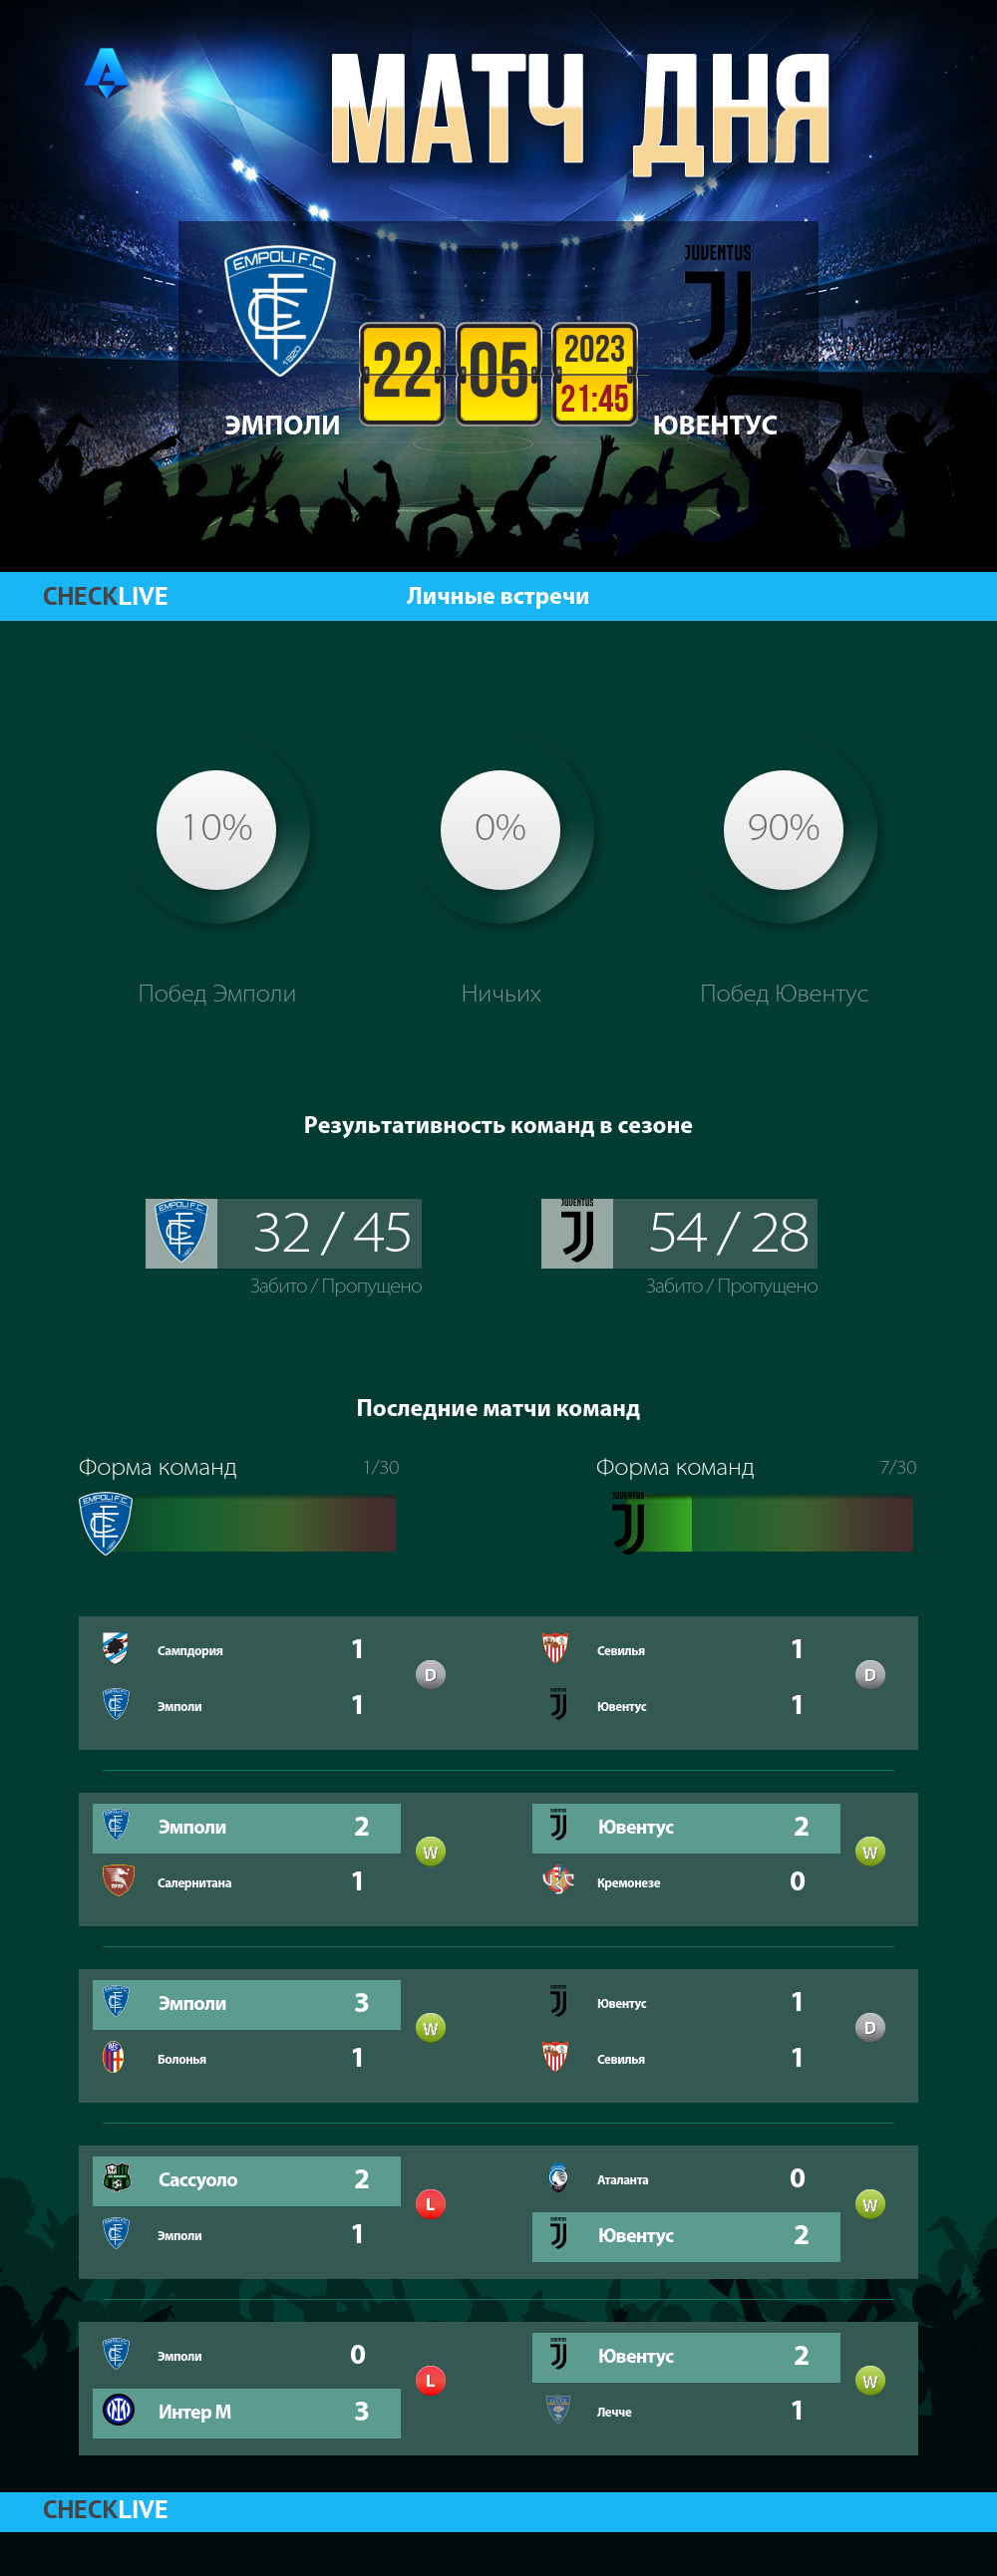 Инфографика Эмполи и Ювентус матч дня 22.05.2023